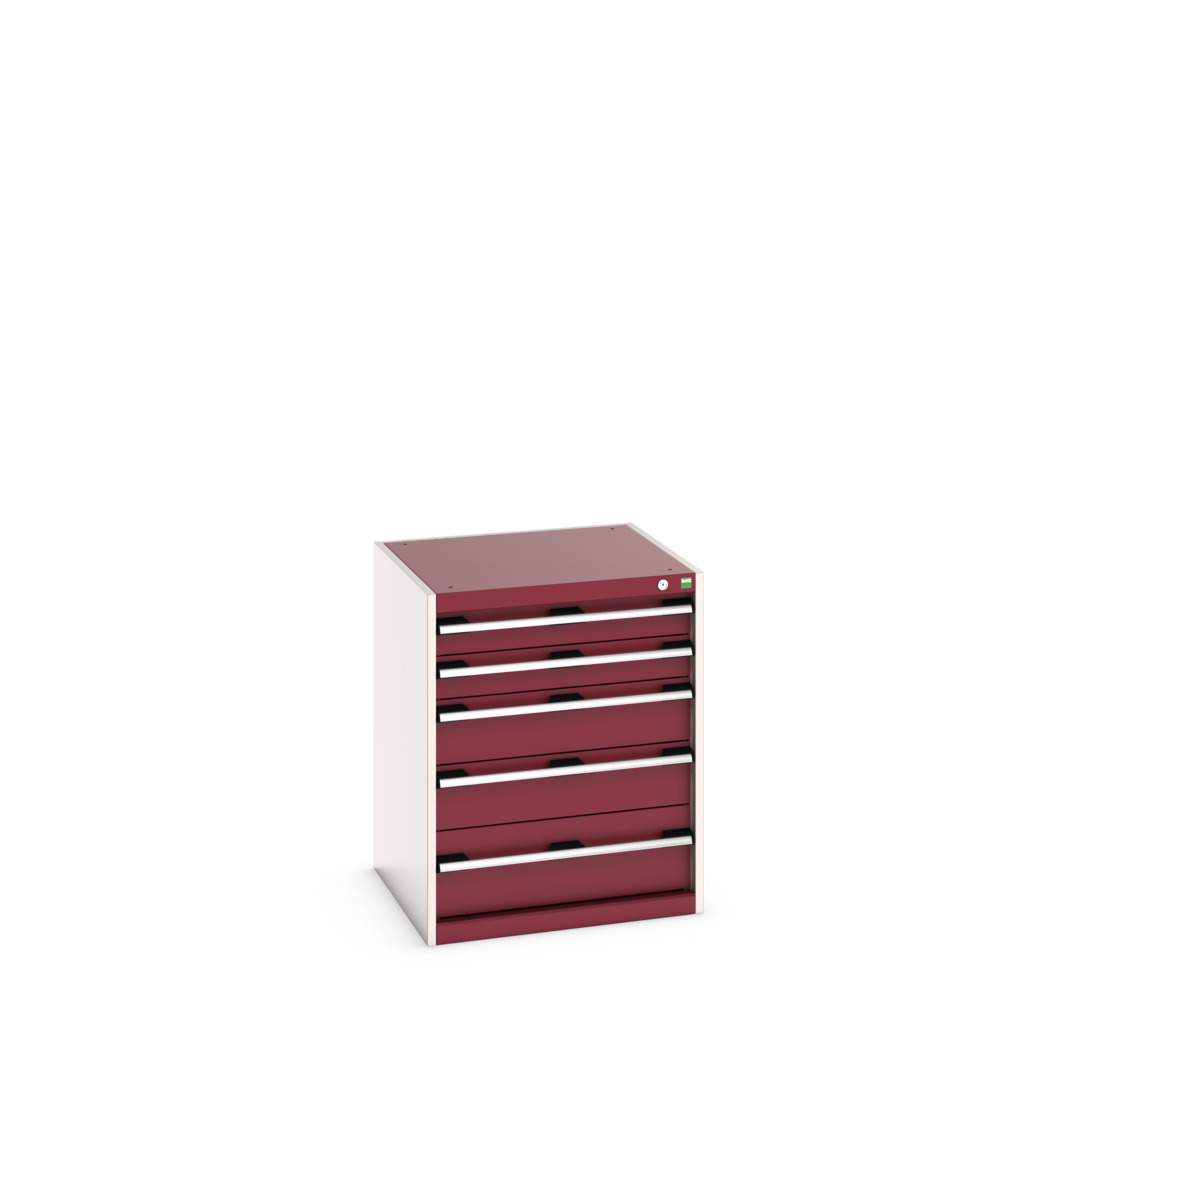 40019035.24V - cubio drawer cabinet